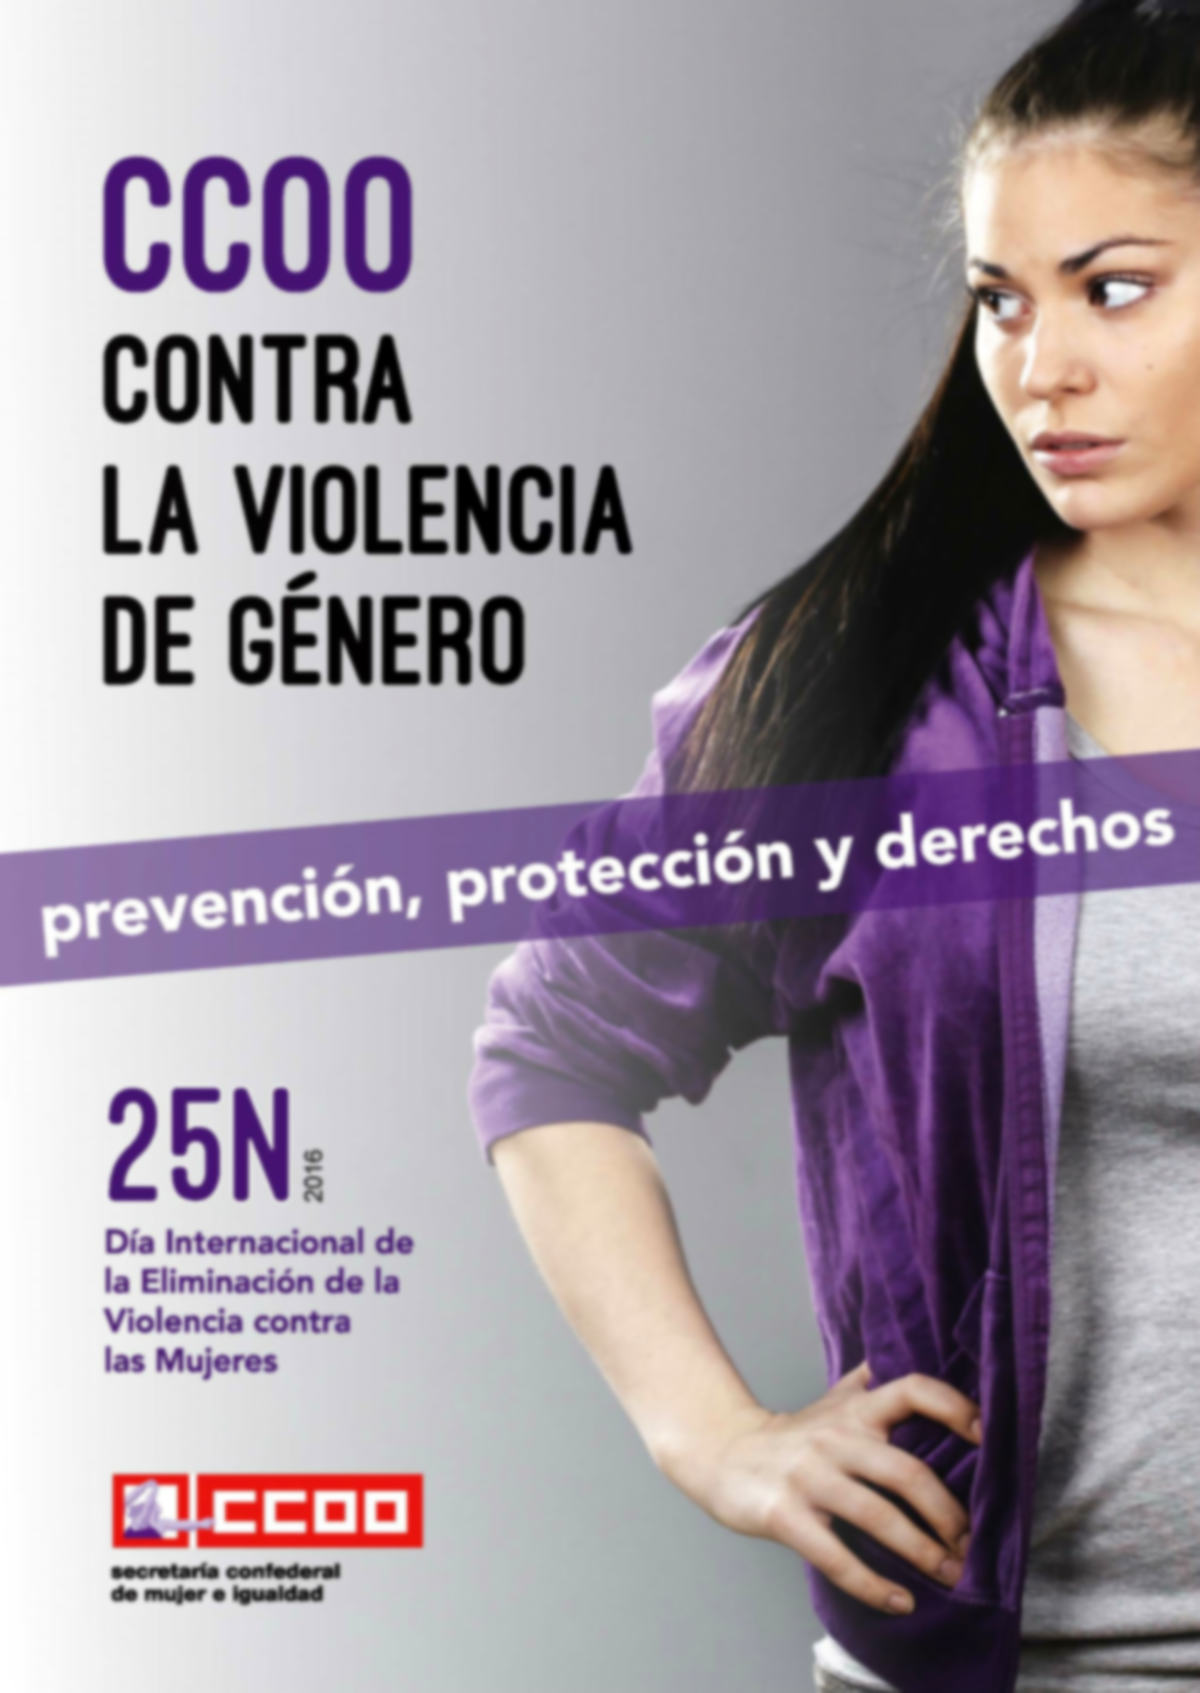 CCOO contra la violencia de género